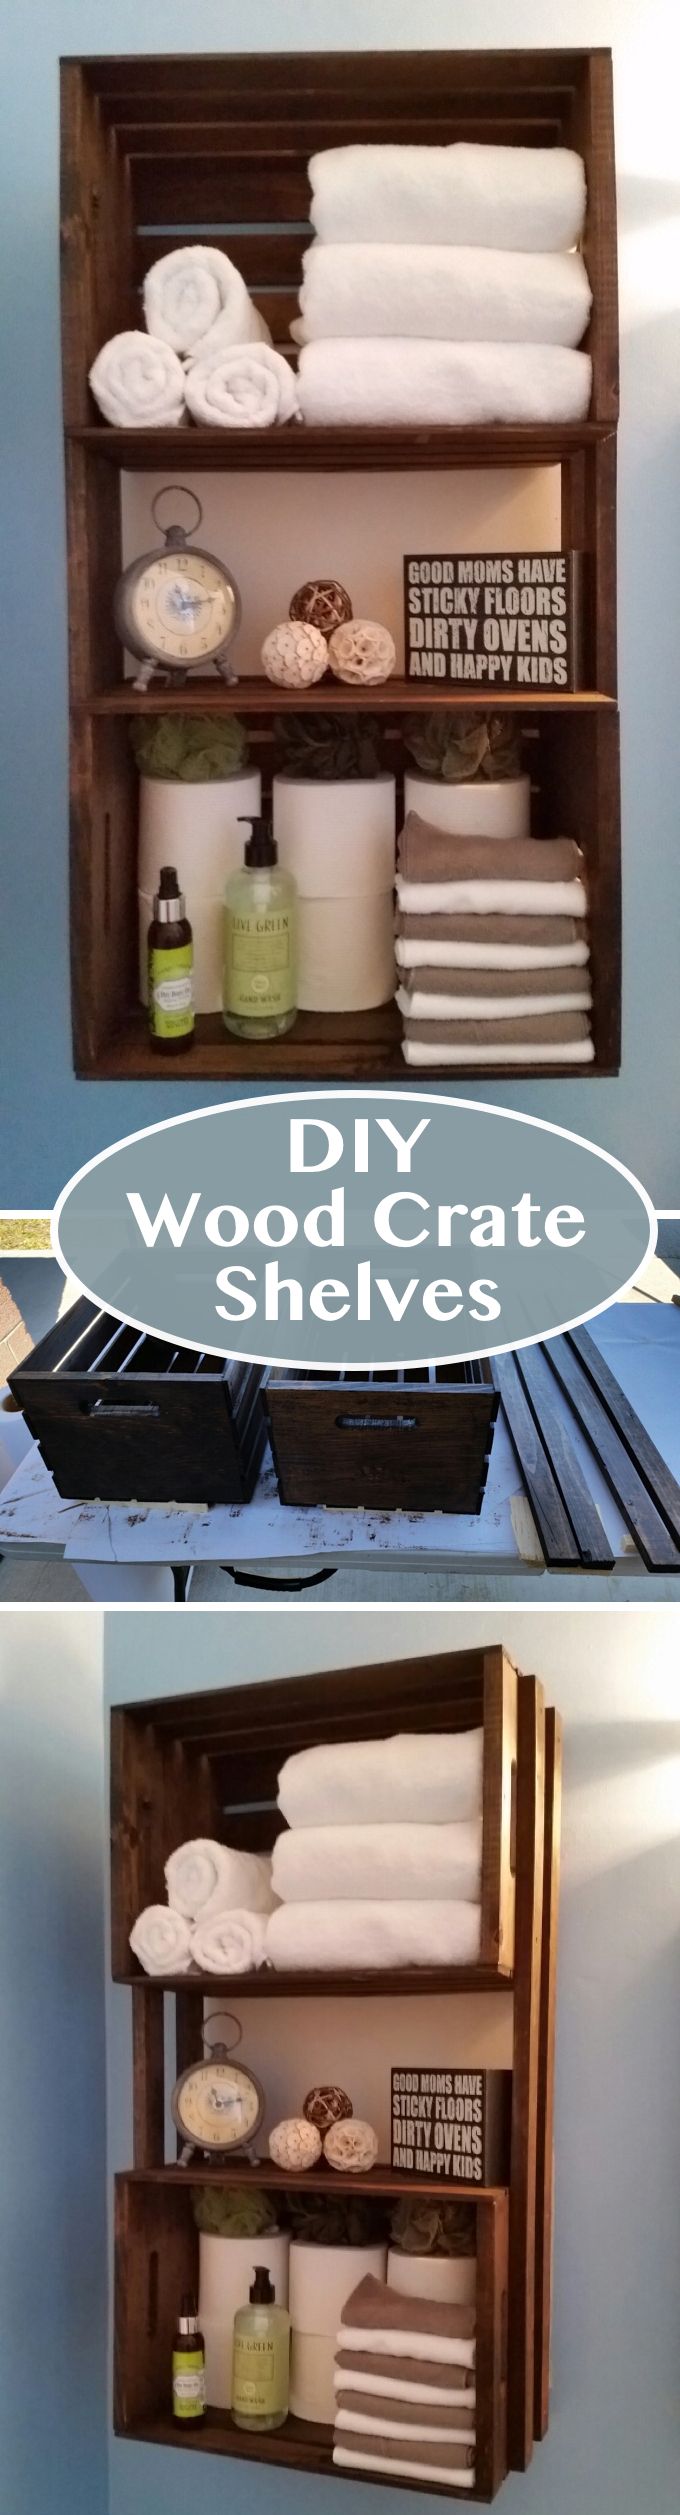 DIY Wood Crate Shelves